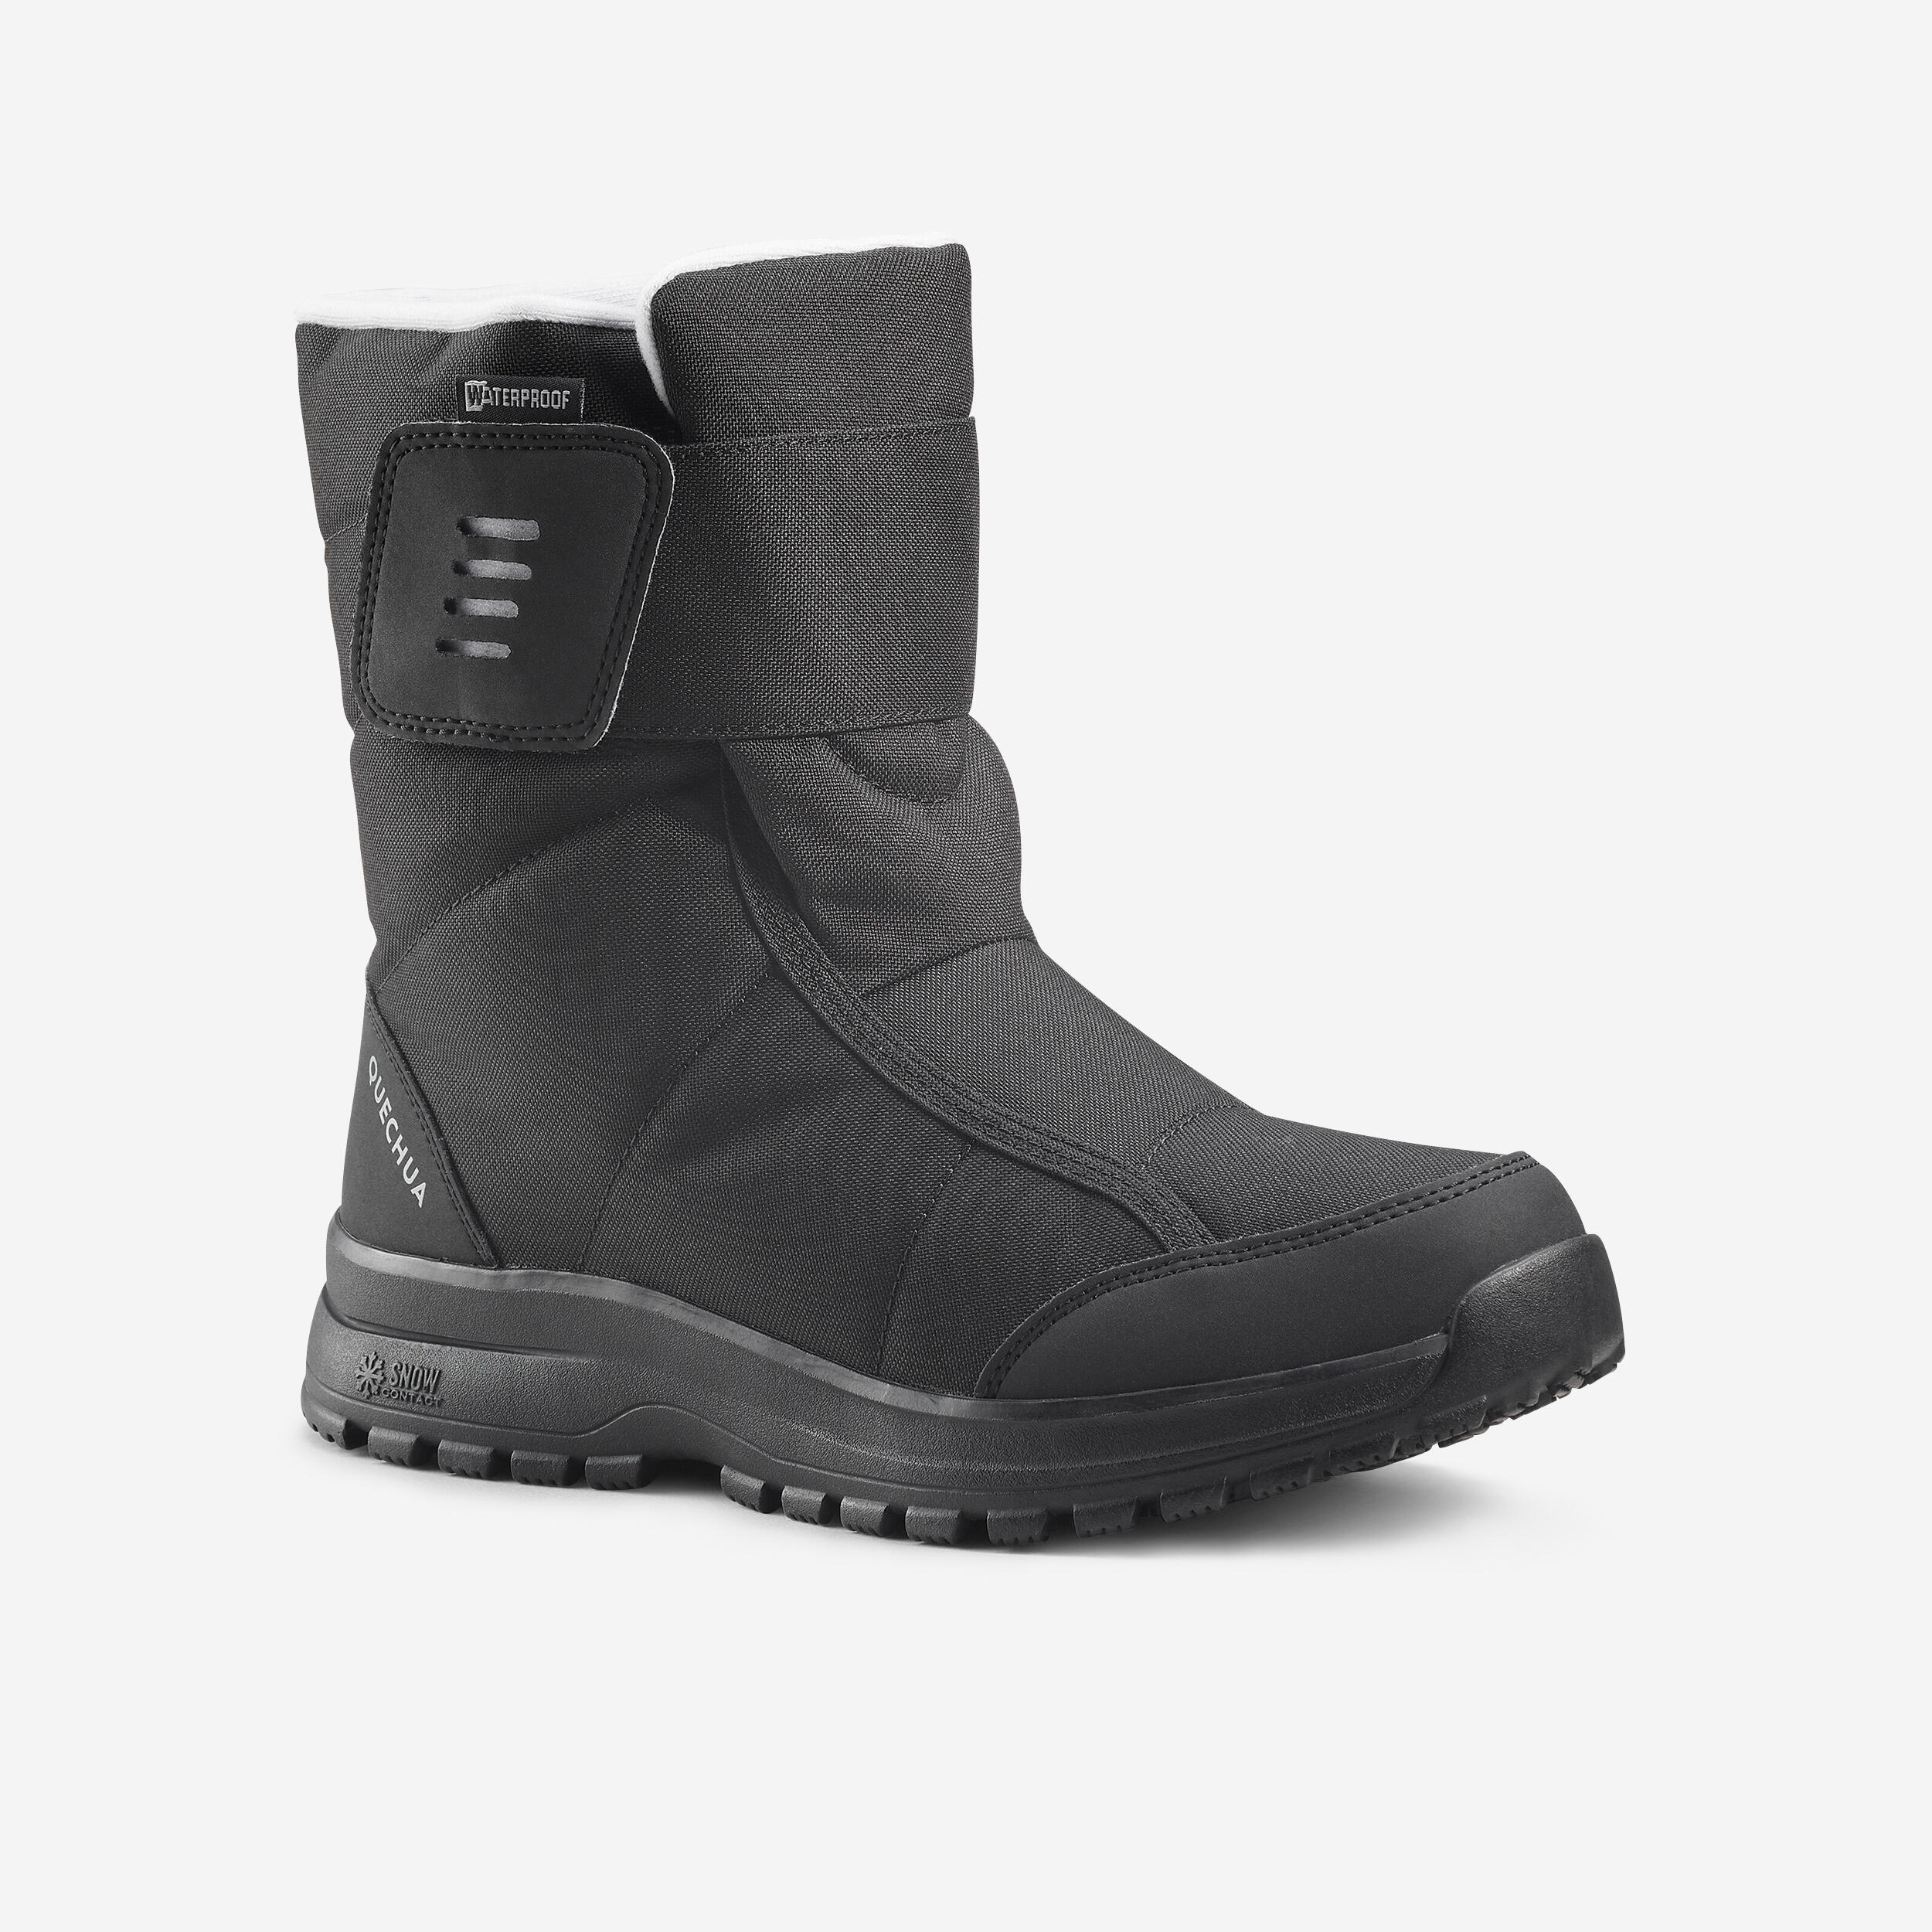 Women's warm waterproof snow hiking boots - SH100 Velcro  1/5